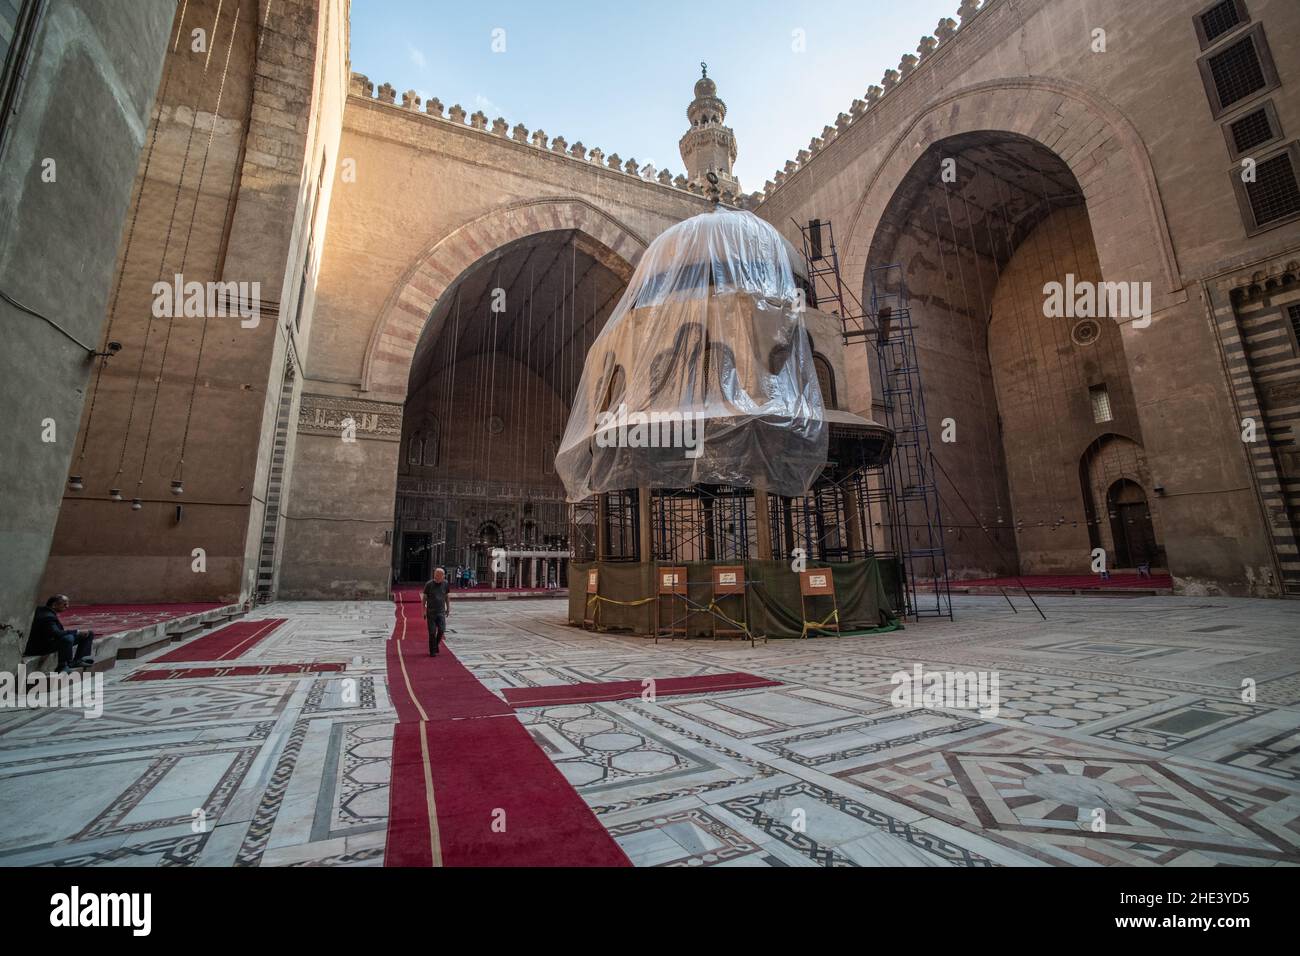 Il cortile e la fontana dell'antica moschea madrasa del Sultano Hassan al Cairo, considerata come uno dei più grandi edifici islamici del mondo. Foto Stock